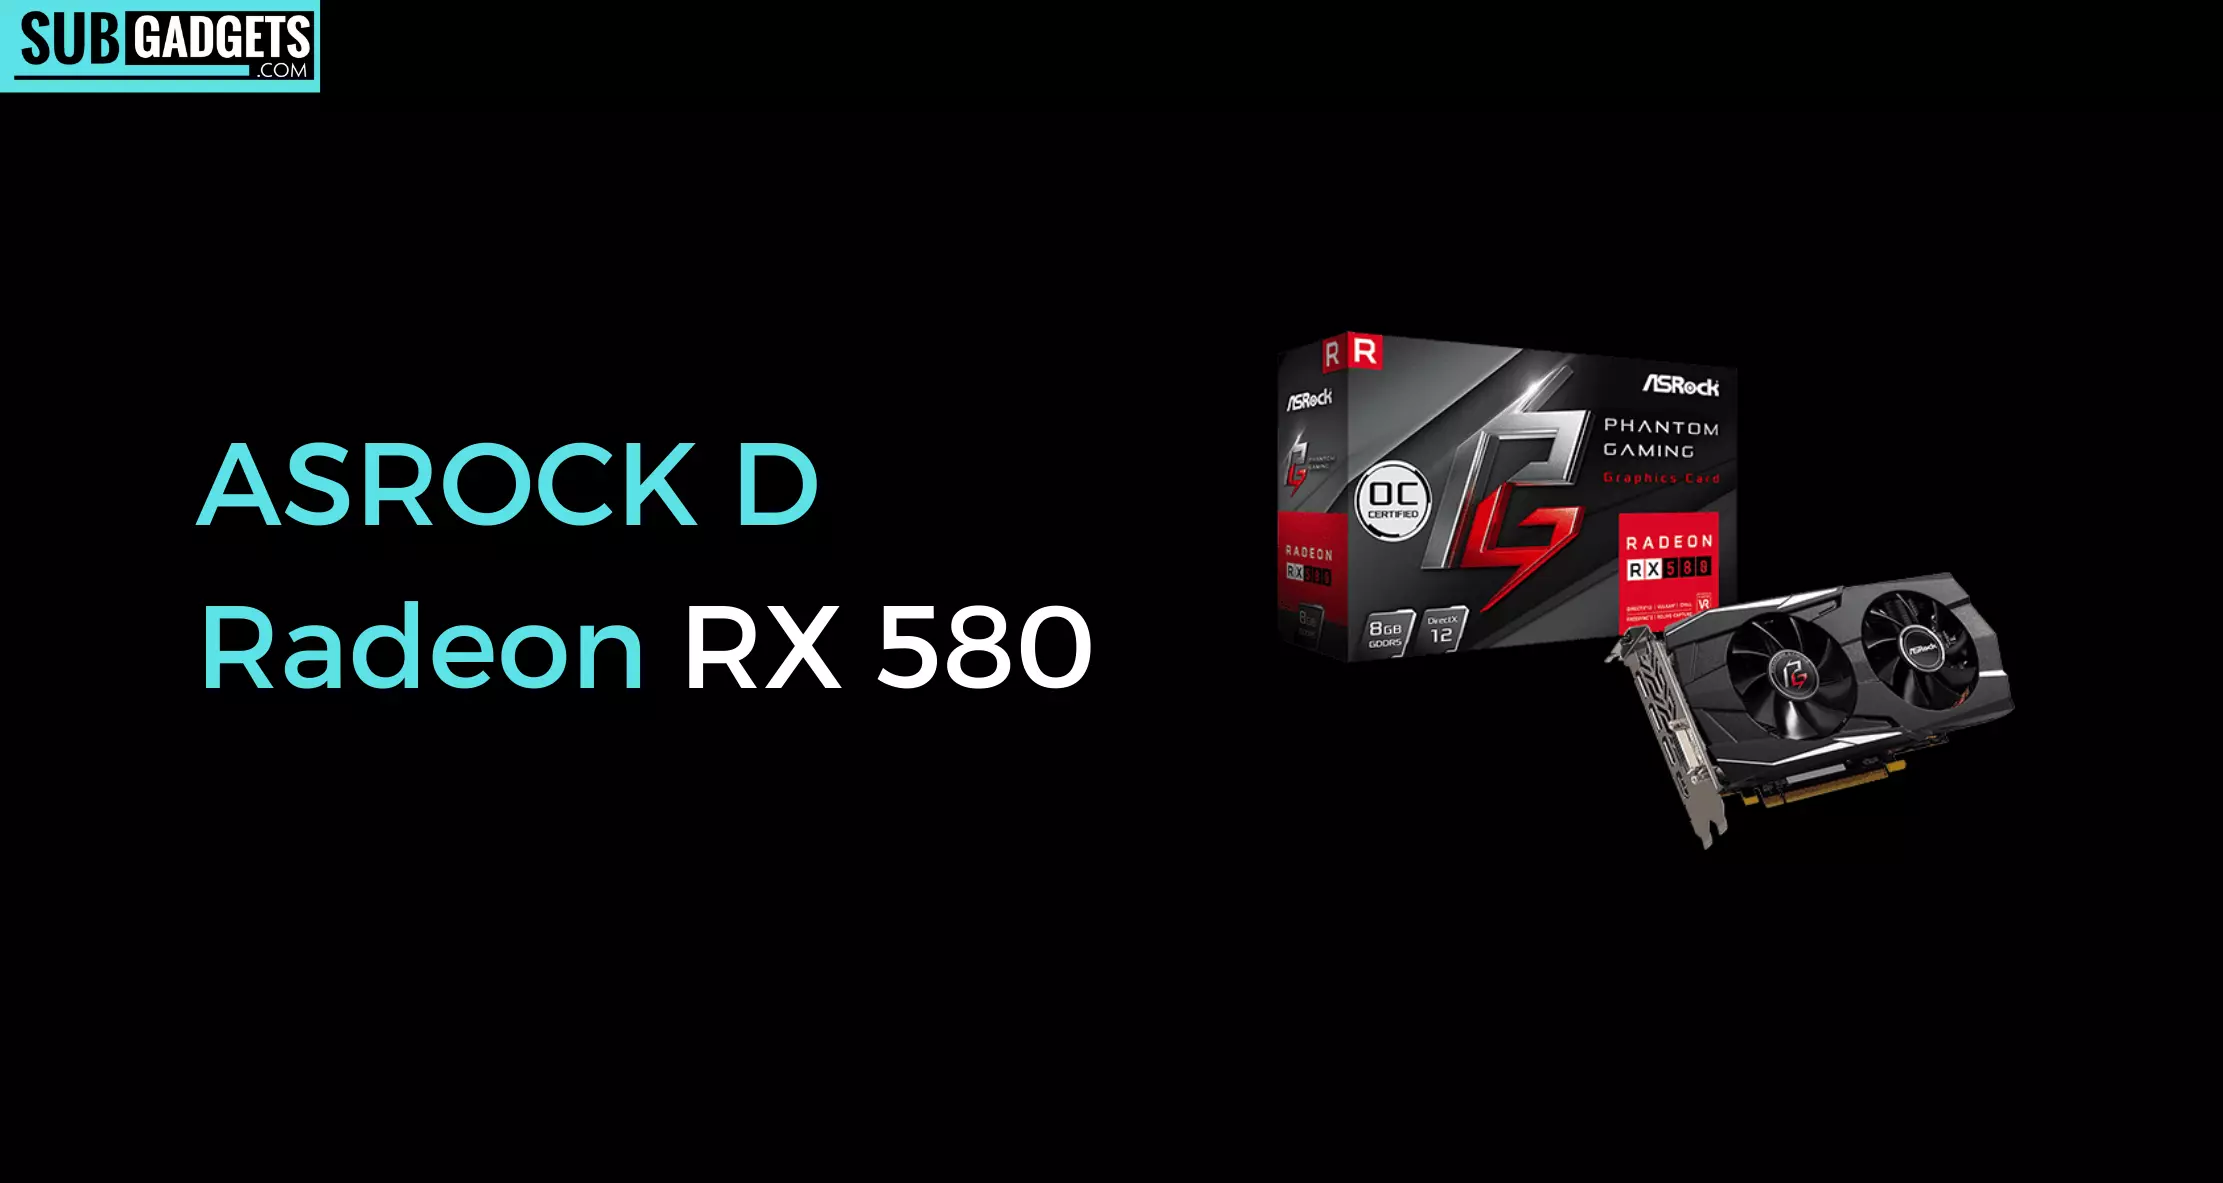 ASROCK D Radeon RX 580 review